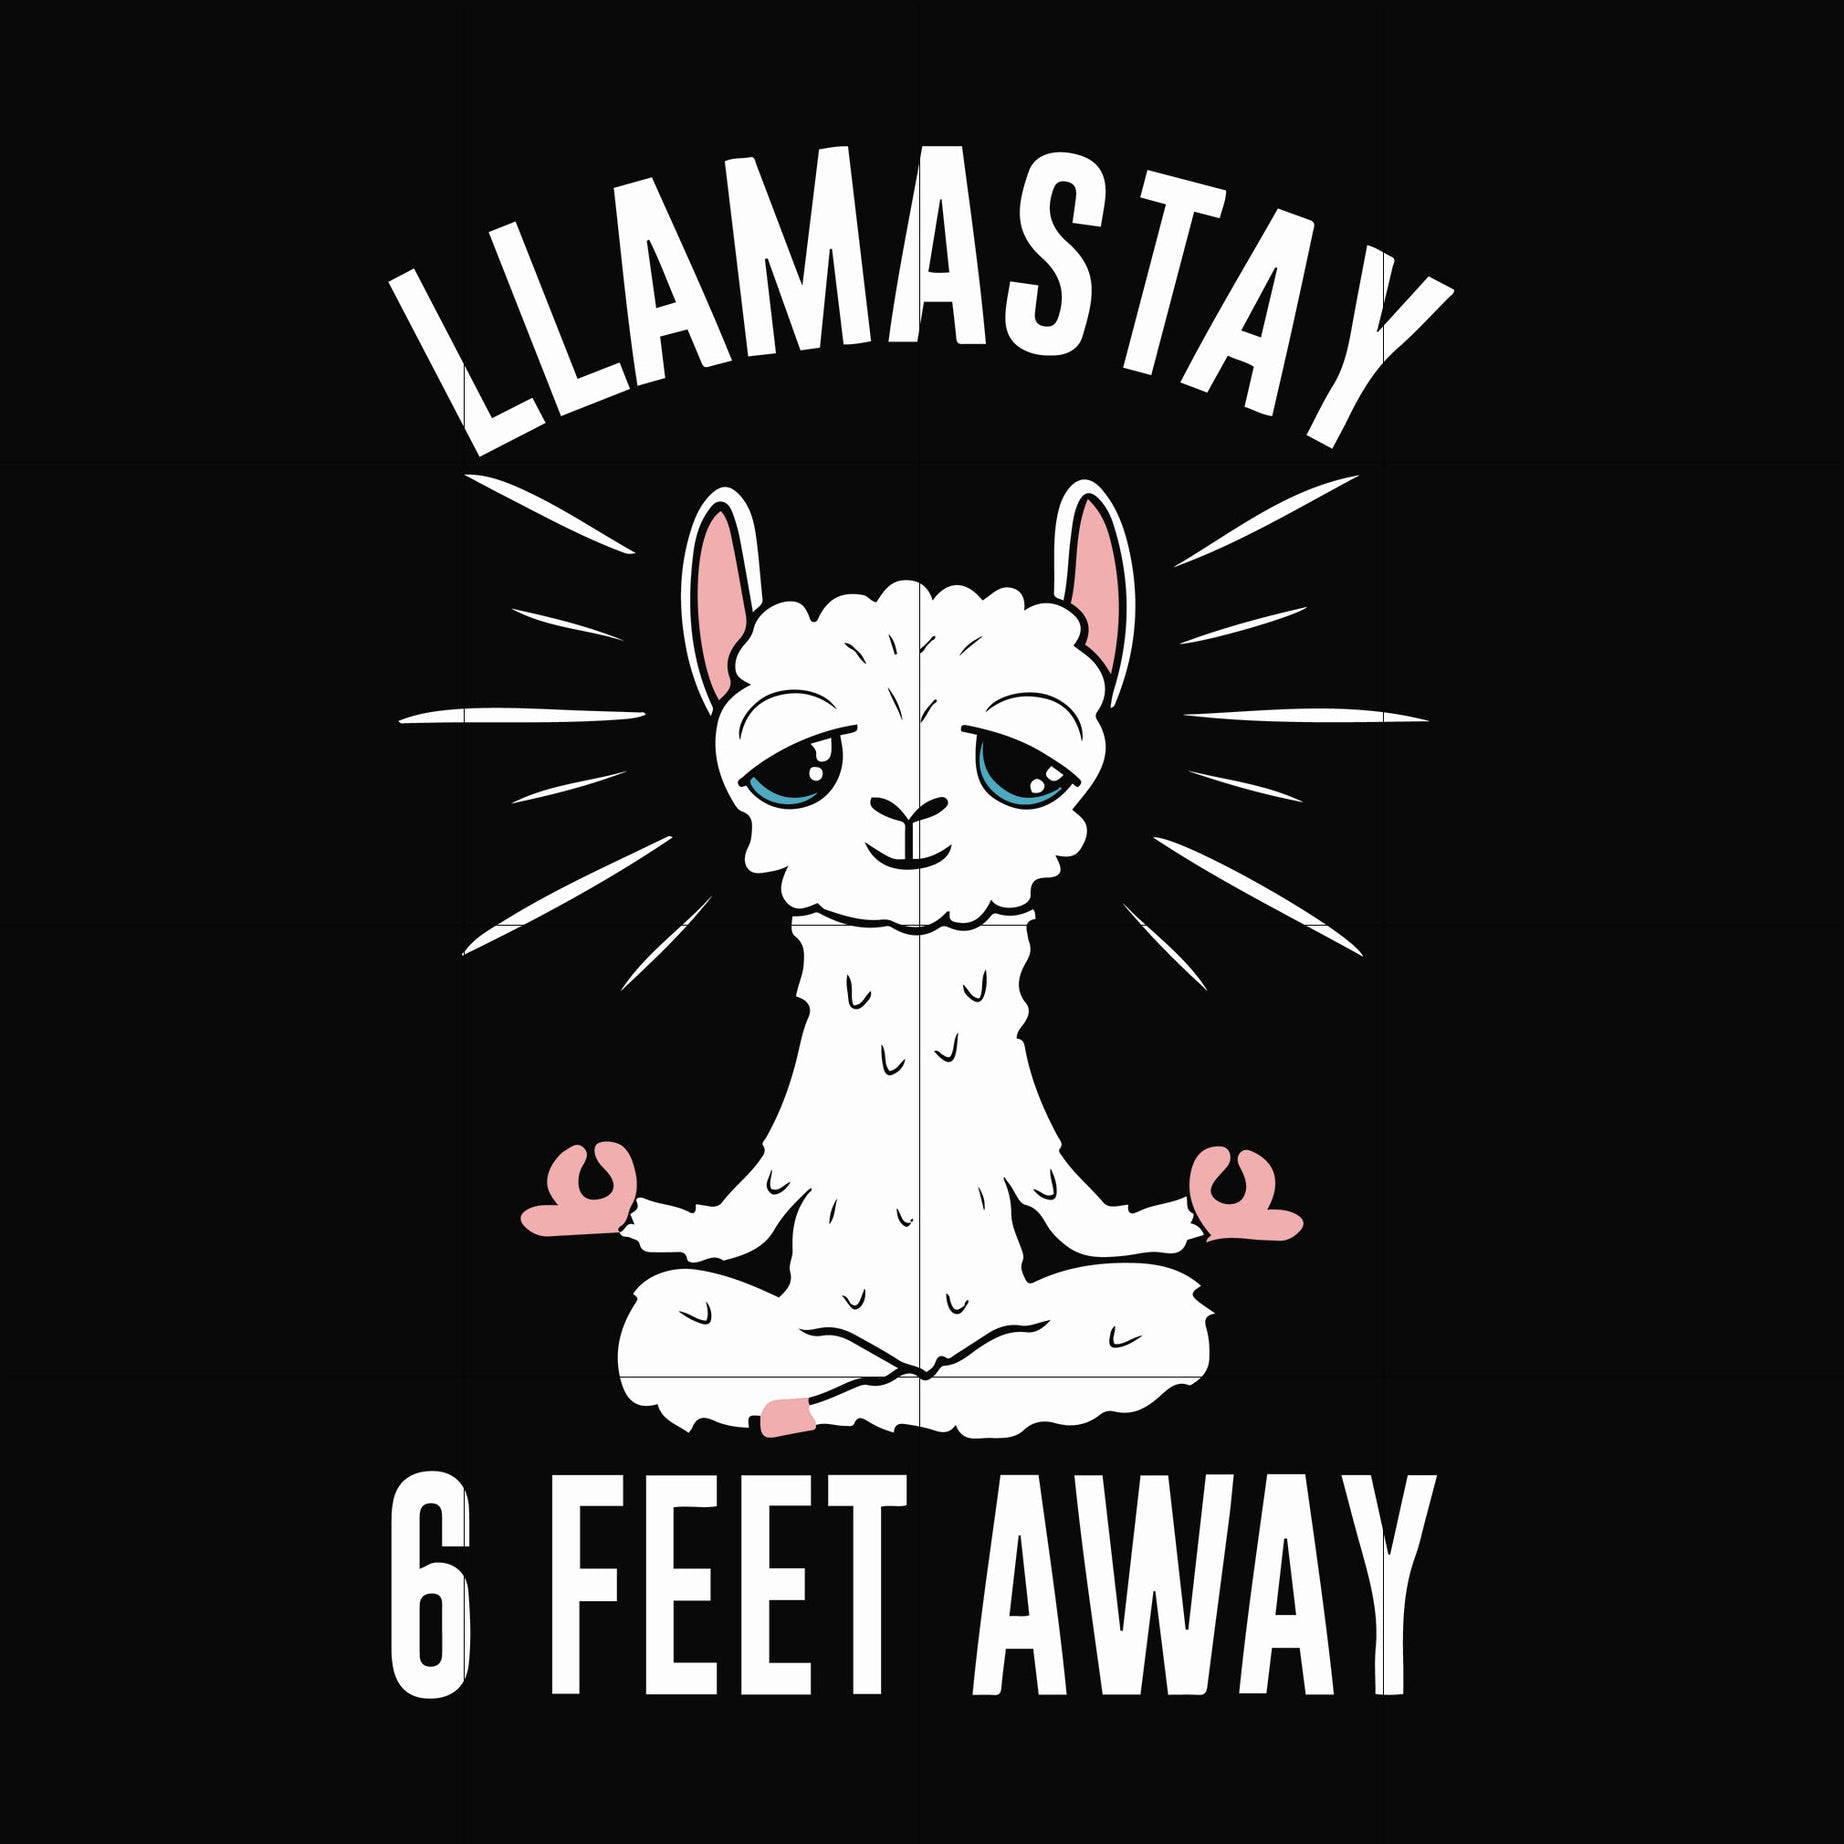 Llamastay 6 feet away svg, png, dxf, eps digital file TD27072033